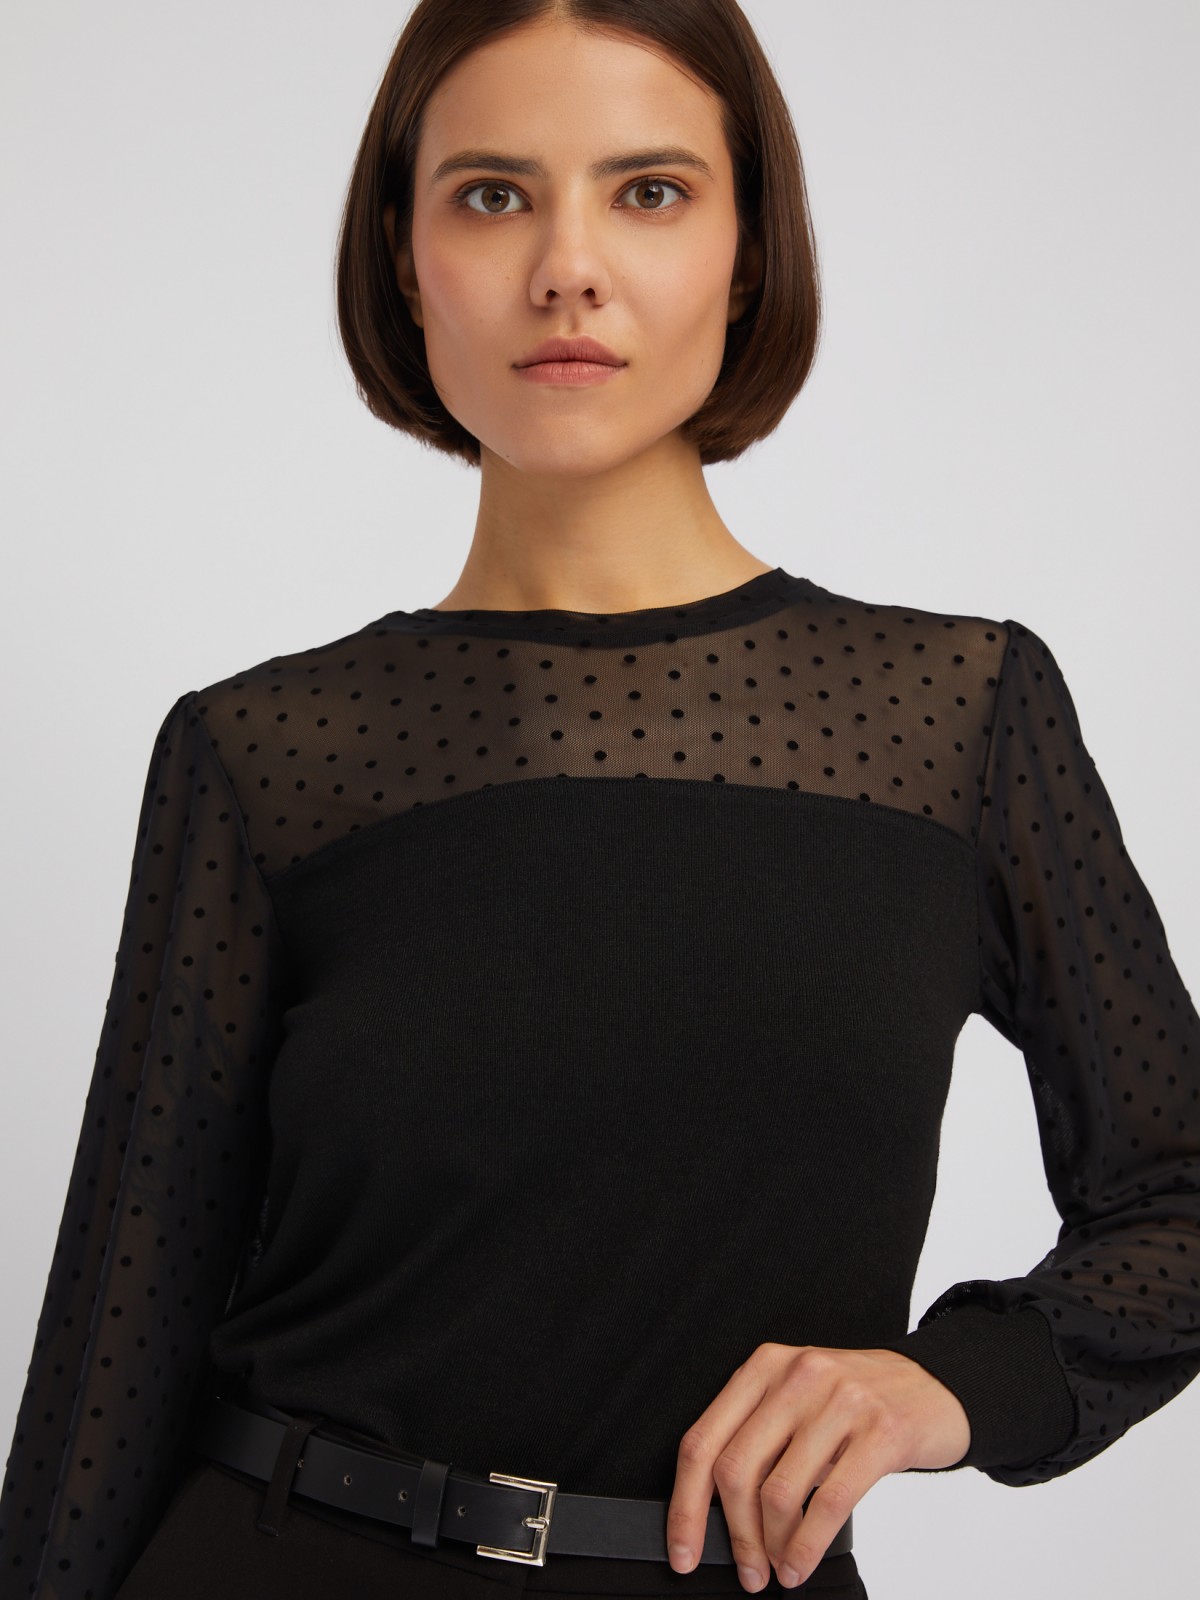 Трикотажный топ-блузка с акцентом на кокетке и рукавах zolla 024113159083, цвет черный, размер XS - фото 3